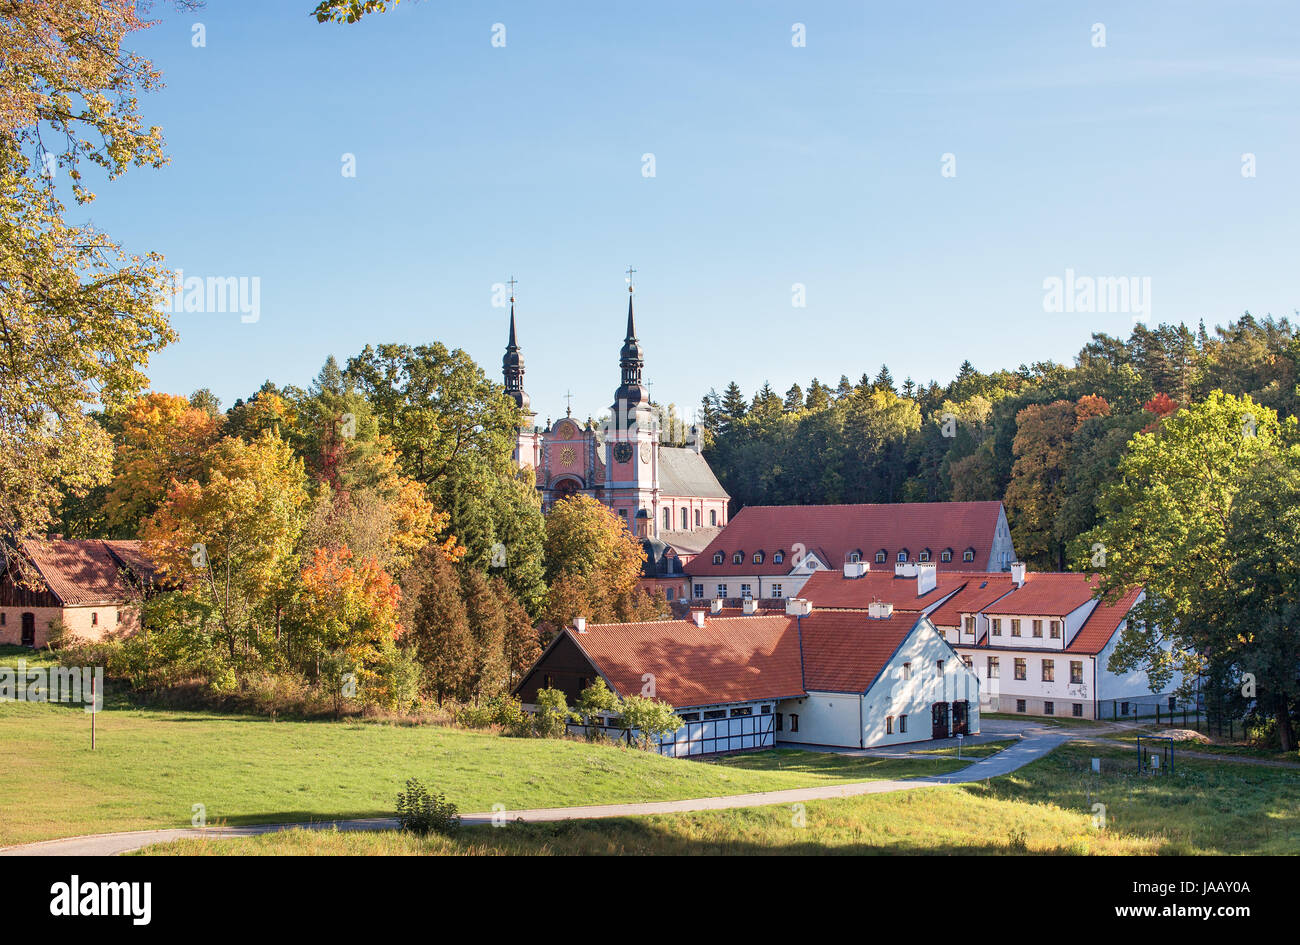 Katholische Barockkirche in Swieta Lipka (Heiligelinde), Masuren, Polen. Farben des Herbstes. Stockfoto